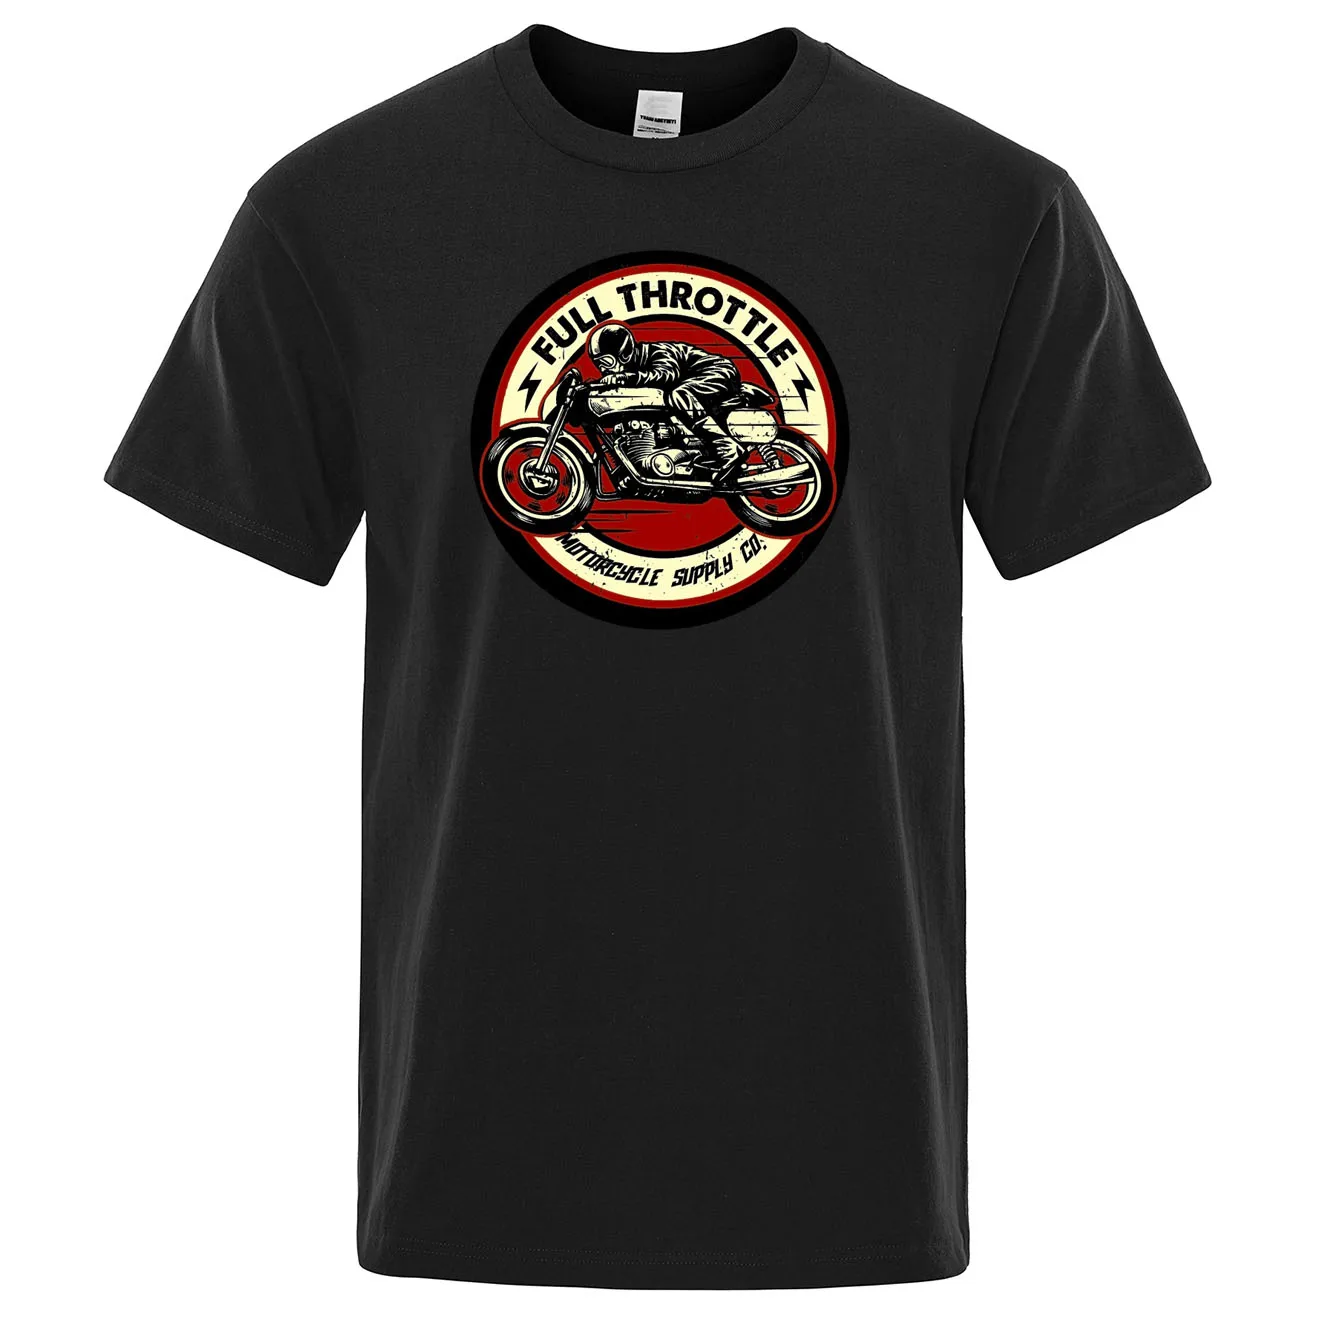 Мужская футболка с мотоциклетным принтом, повседневная футболка с короткими рукавами, Свободная хлопковая футболка, летняя свободная футболка